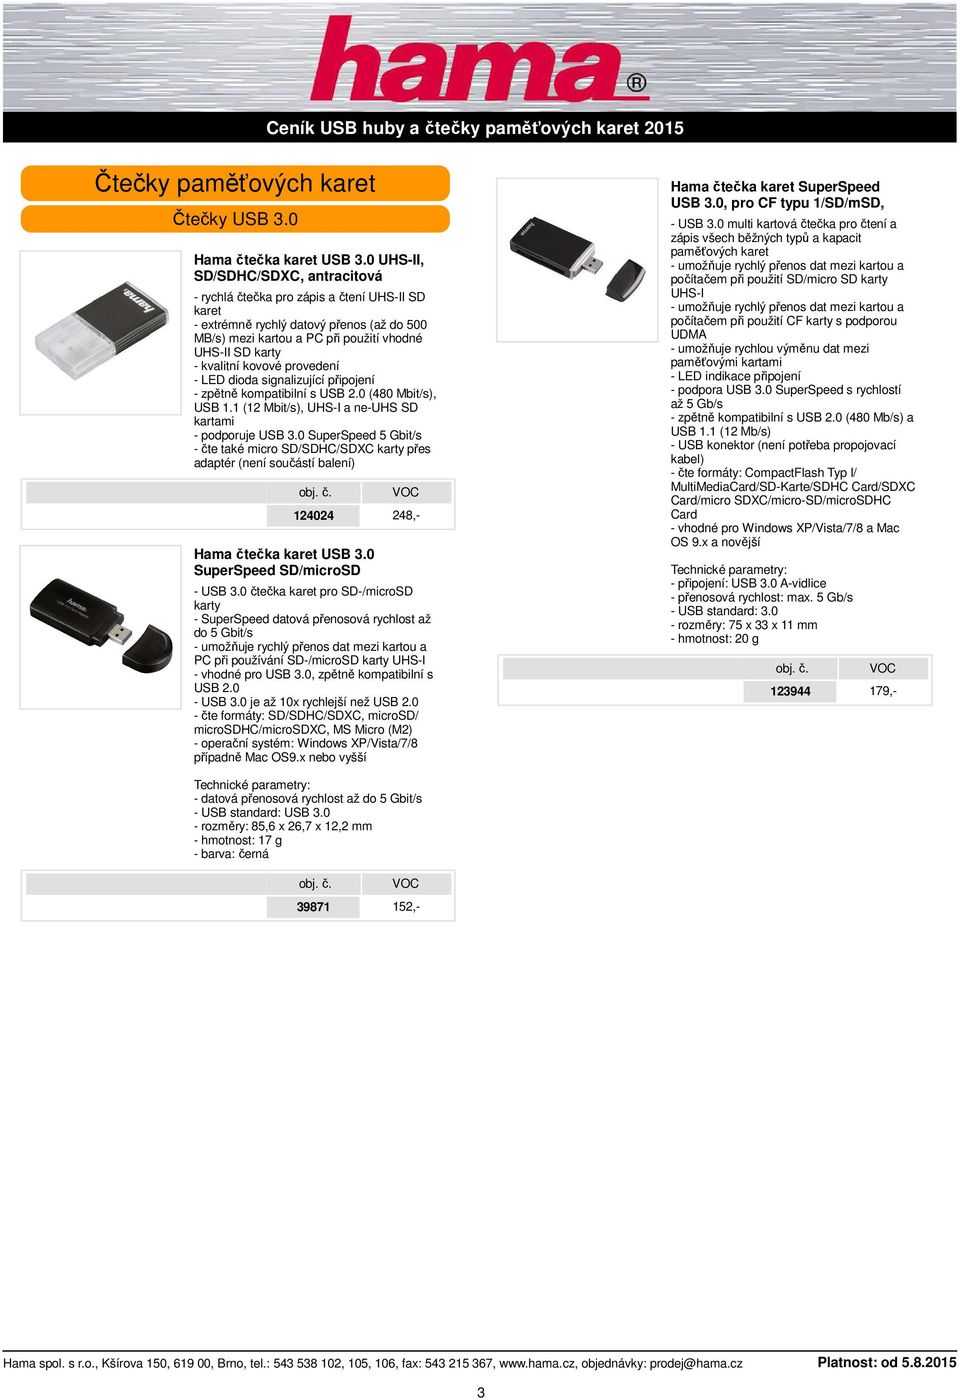 kovové provedení - LED dioda signalizující připojení - zpětně kompatibilní s USB 2.0 (480 Mbit/s), USB 1.1 (12 Mbit/s), UHS-I a ne-uhs SD kartami - podporuje USB 3.